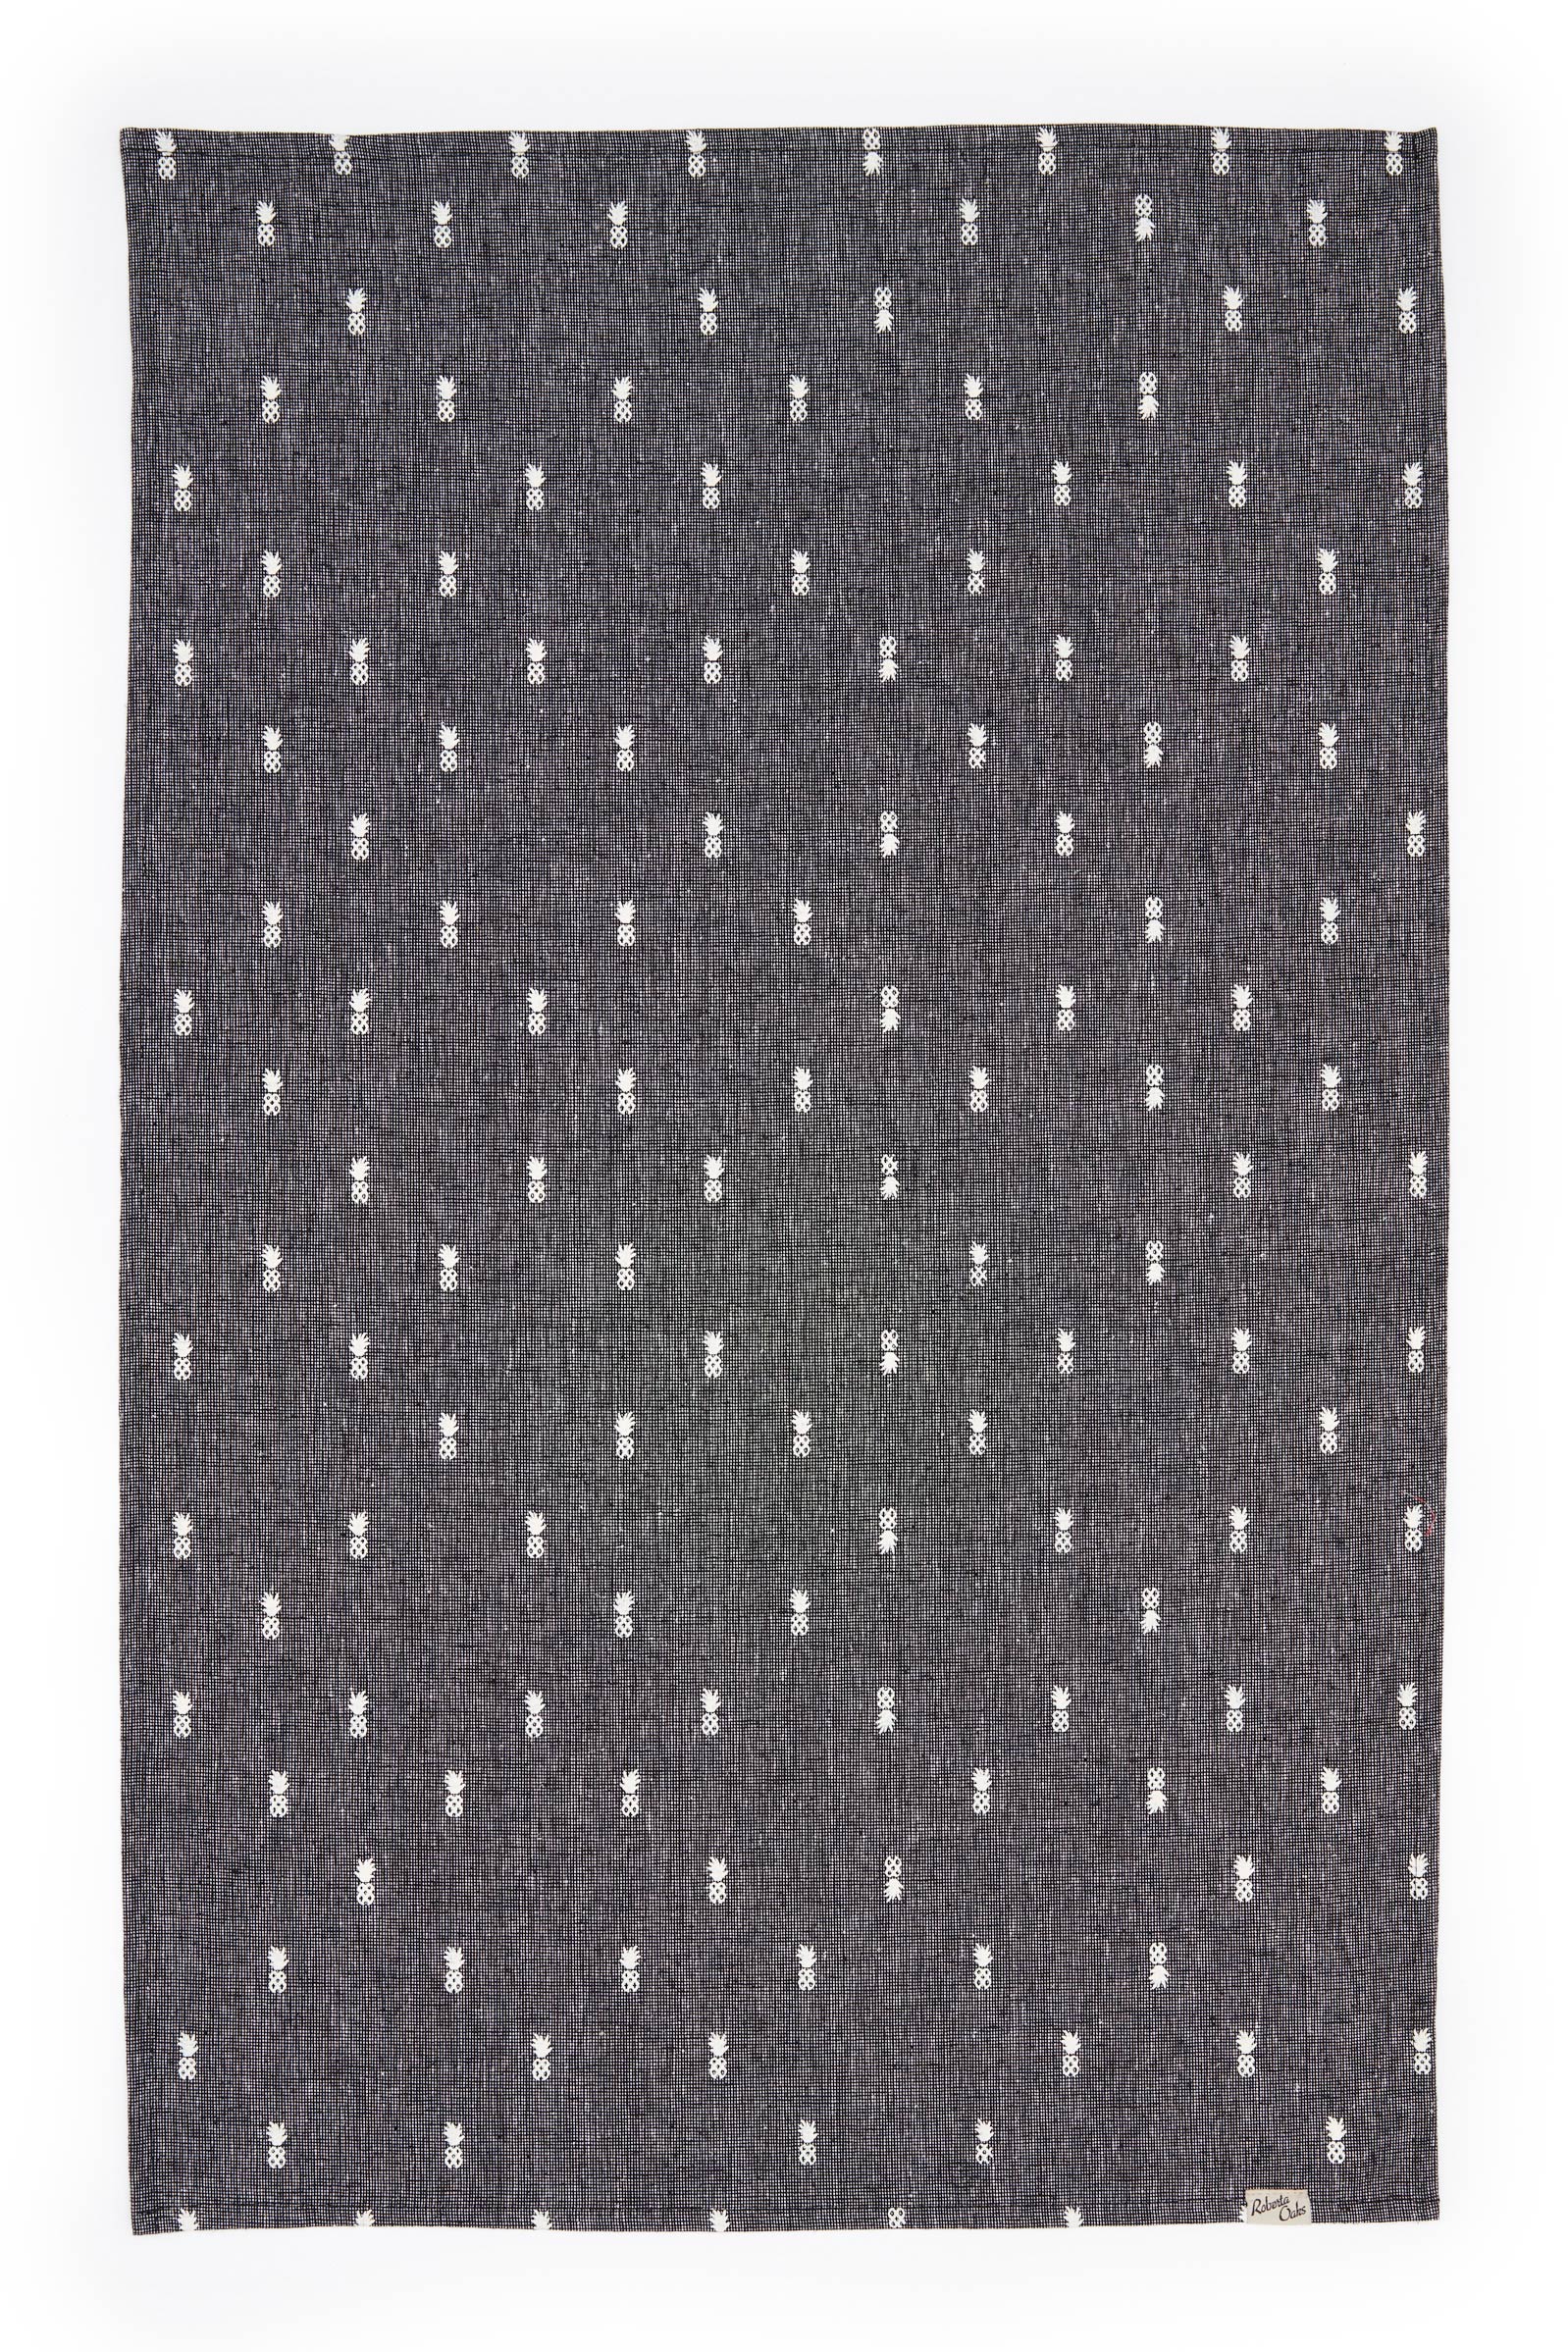 Pineapple Linen Tea Towel - Textured Black